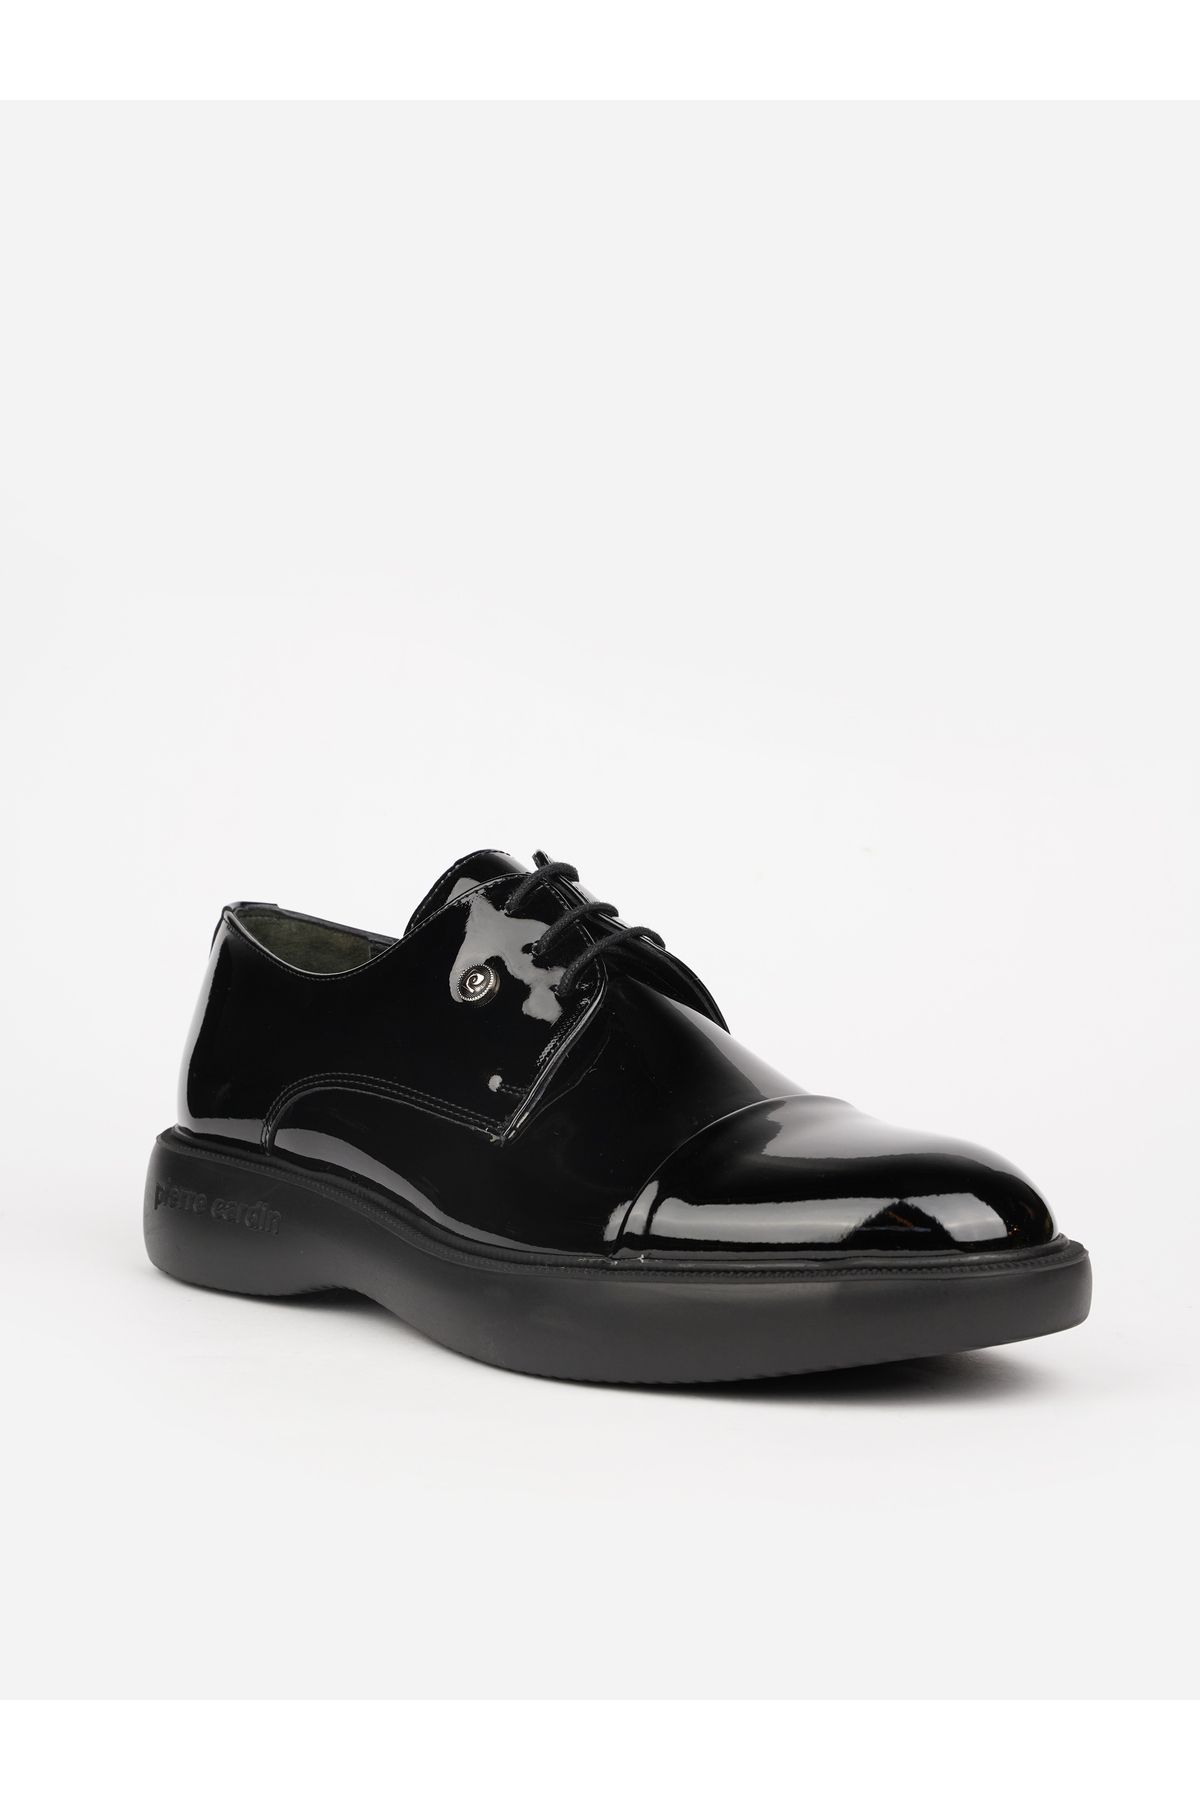 Pierre Cardin Siyah CONFORT MEDİCAL TABAN HAKIKI DERİ encok satan model sneaker..GALİP BABA damat ayakkabısı